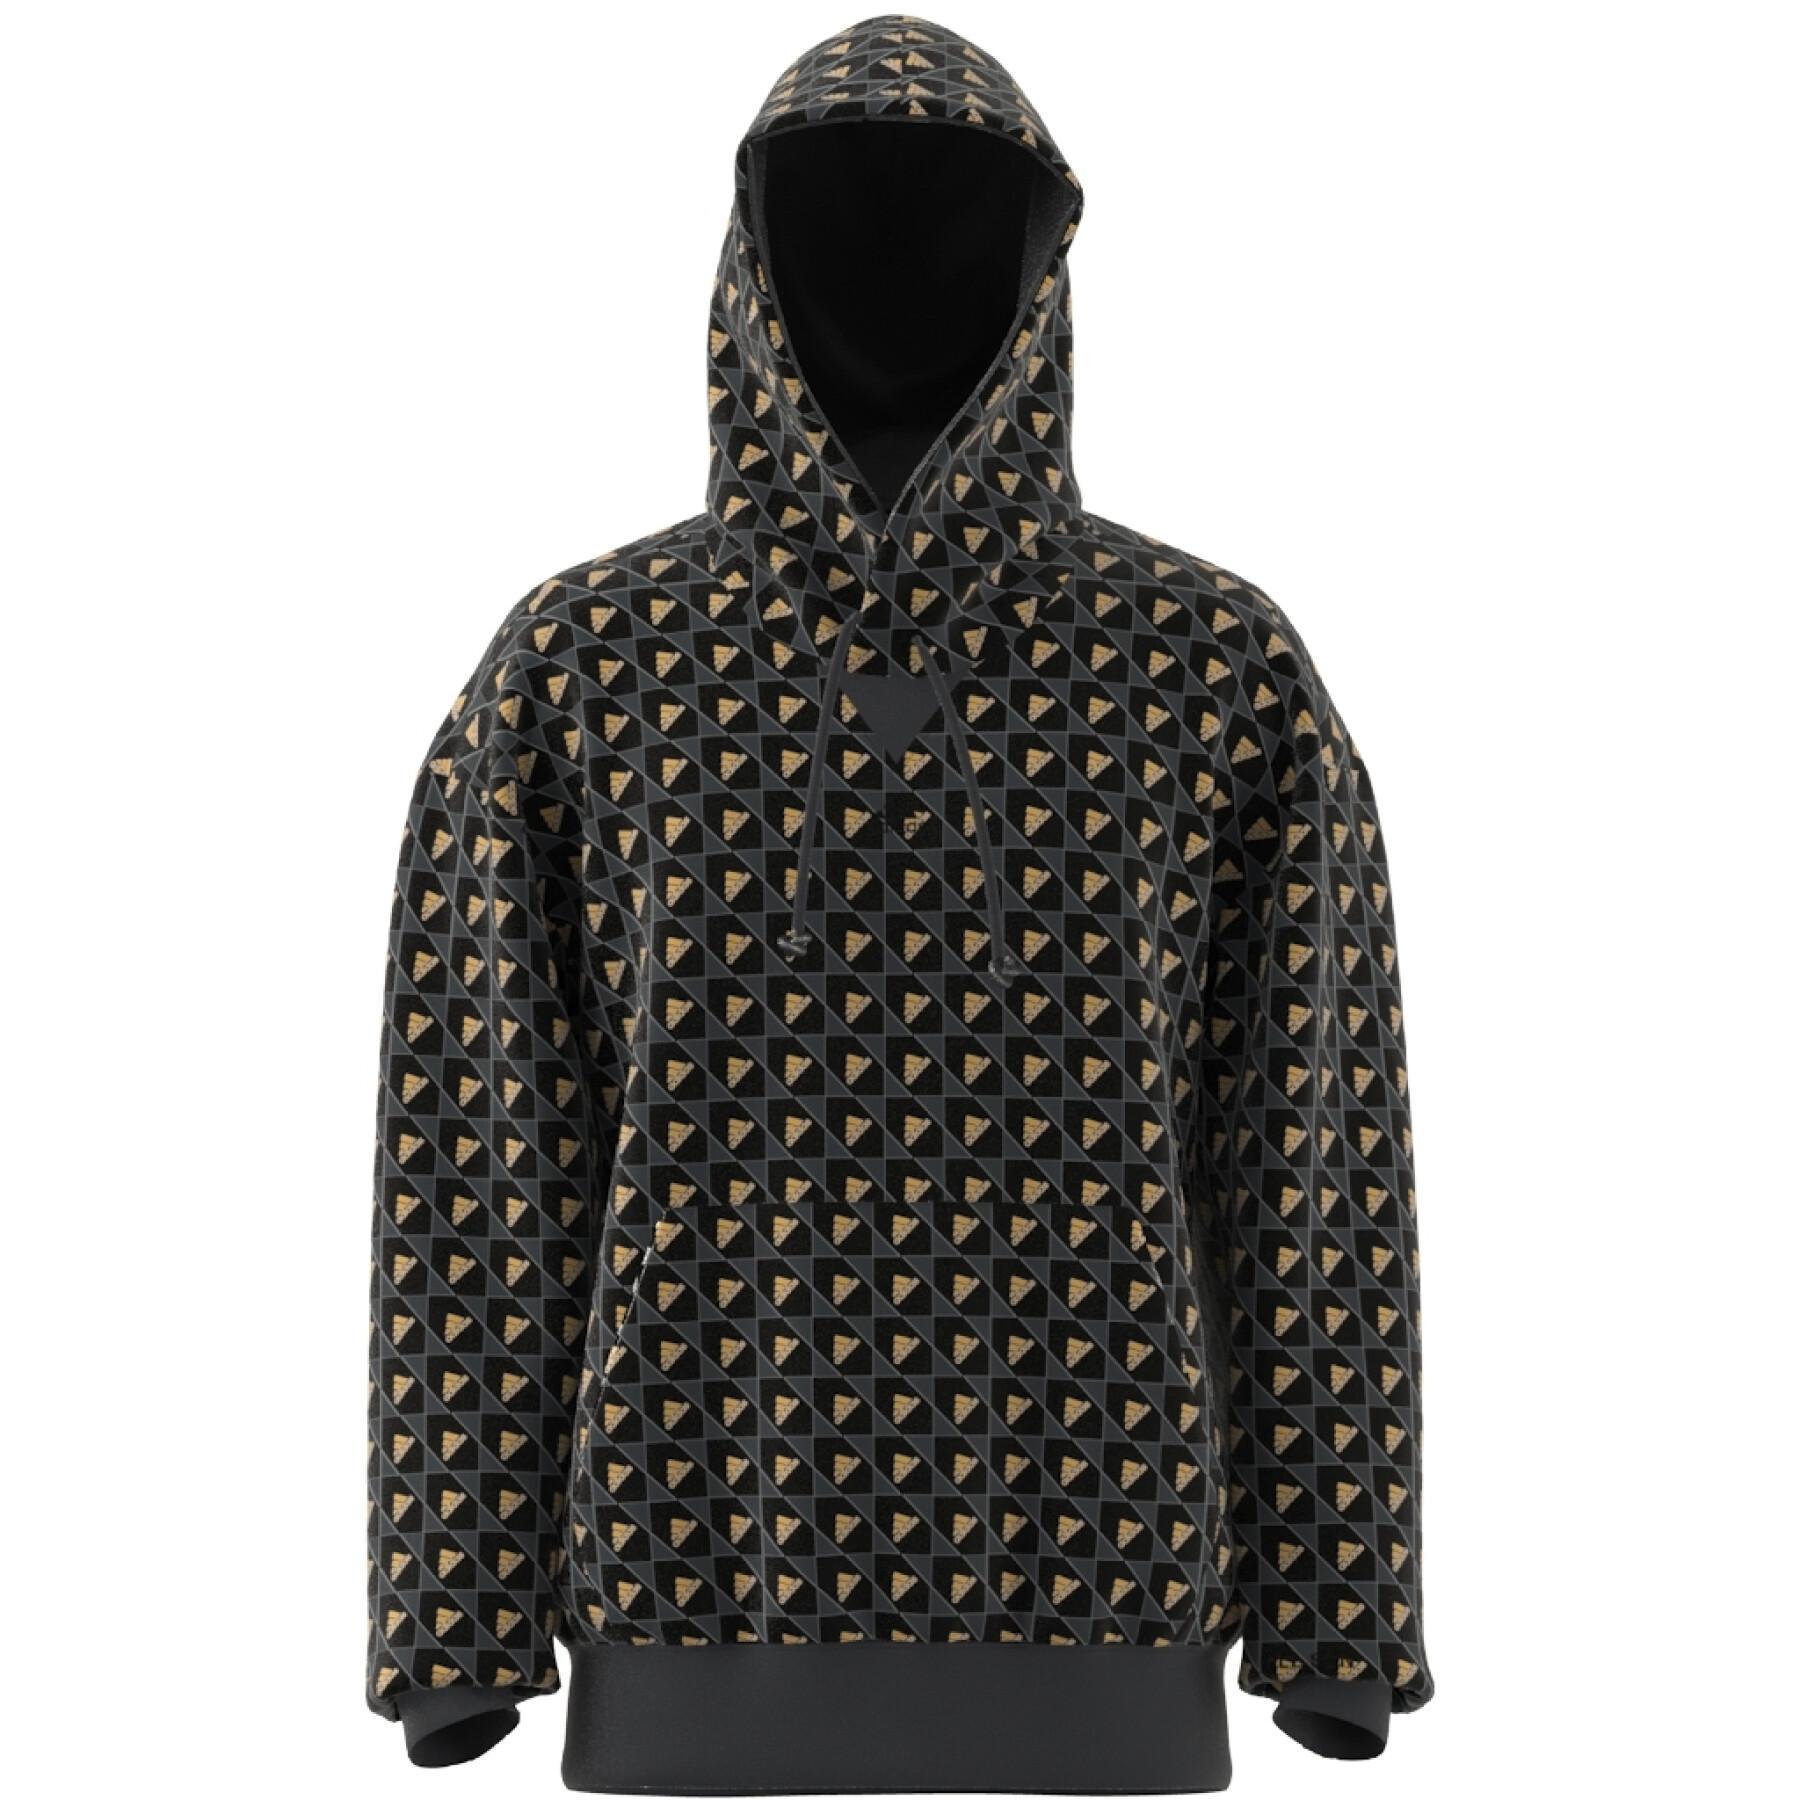 Sweatshirt hooded adidas ALL SZN x Logomania